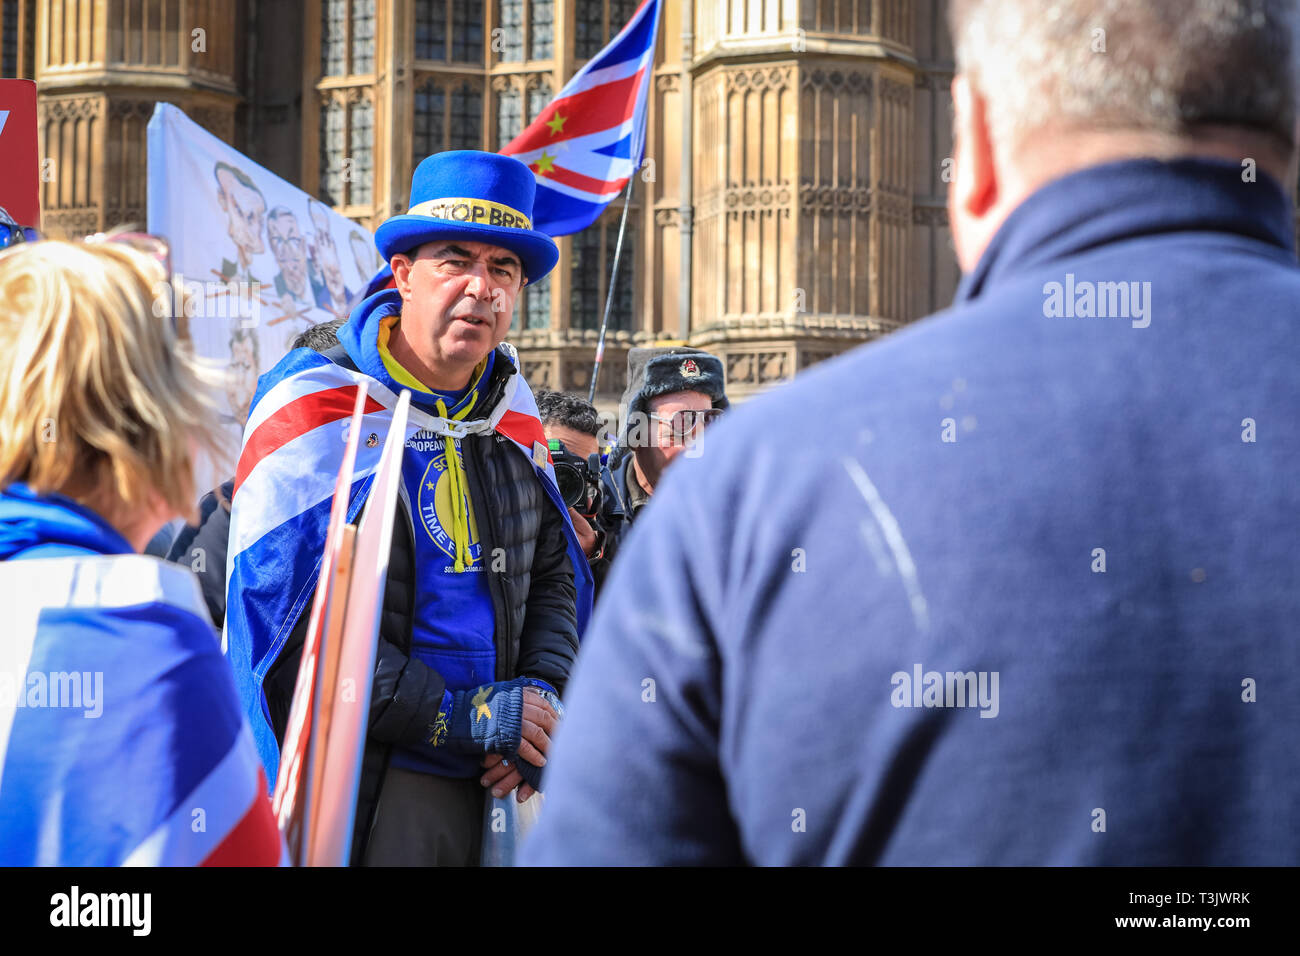 Westminster, Londra, UK, 10 aprile 2019. Pro e contro manifestanti Brexit rally al di fuori le case o il parlamento di Westminster, come Theresa Maggio è ancora una volta a Bruxelles a negoziare su una estensione Brexit. Alcuni proteters entrare in un dibattito. Credito: Imageplotter/Alamy Live News Foto Stock